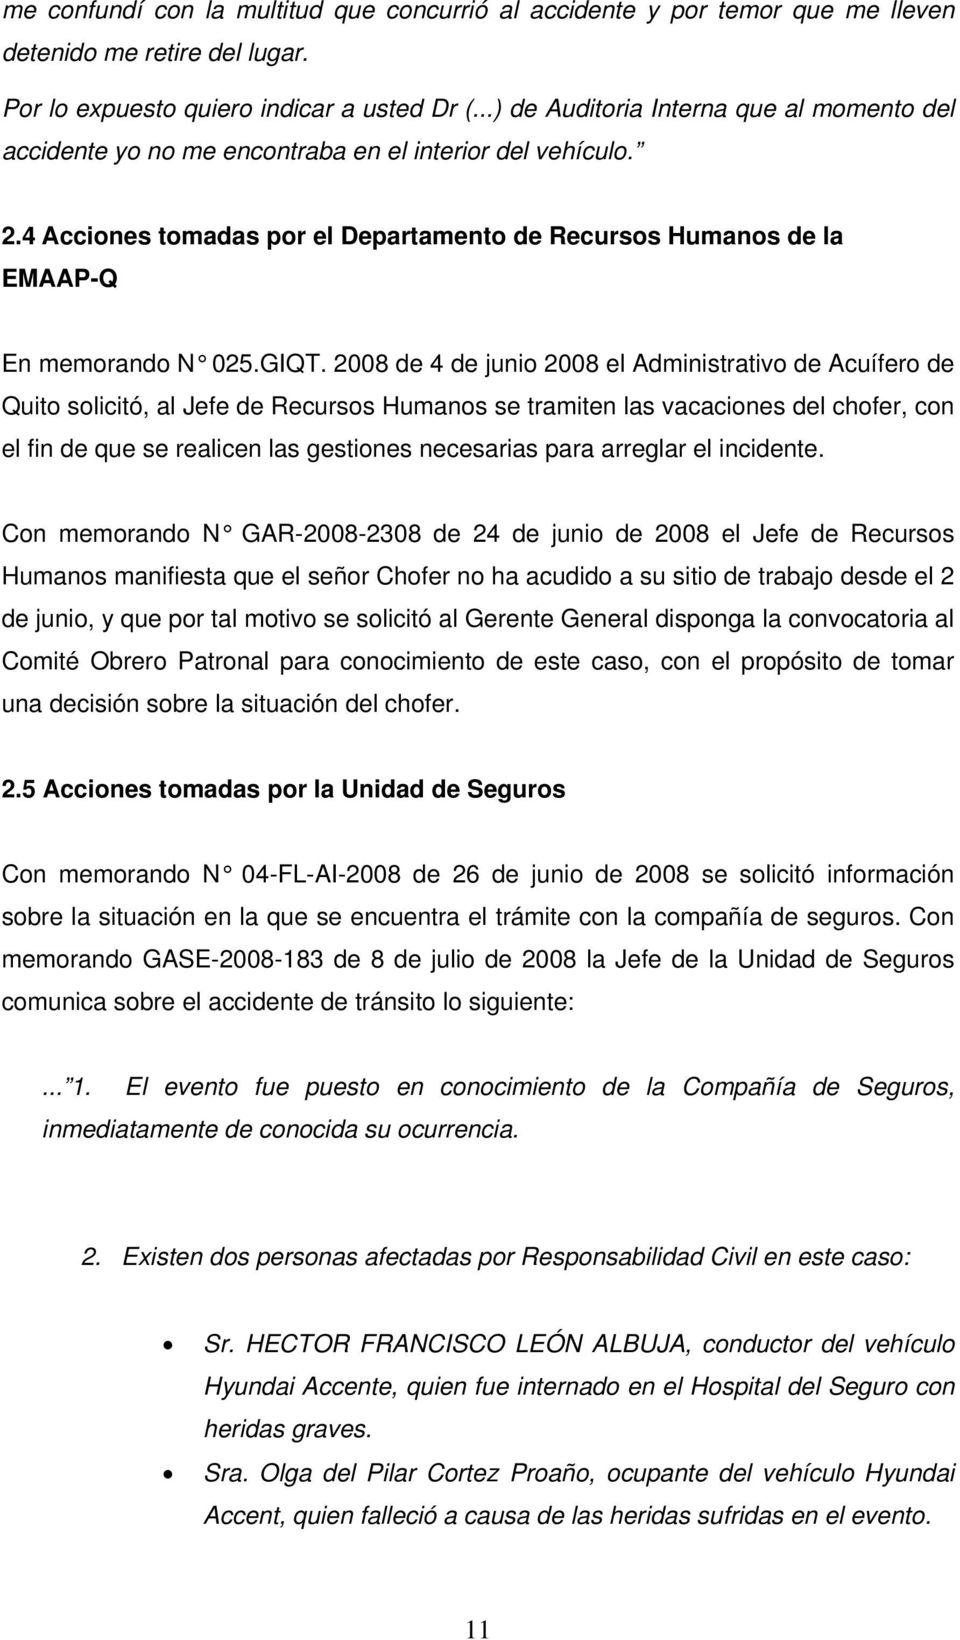 GIQT. 2008 de 4 de junio 2008 el Administrativo de Acuífero de Quito solicitó, al Jefe de Recursos Humanos se tramiten las vacaciones del chofer, con el fin de que se realicen las gestiones